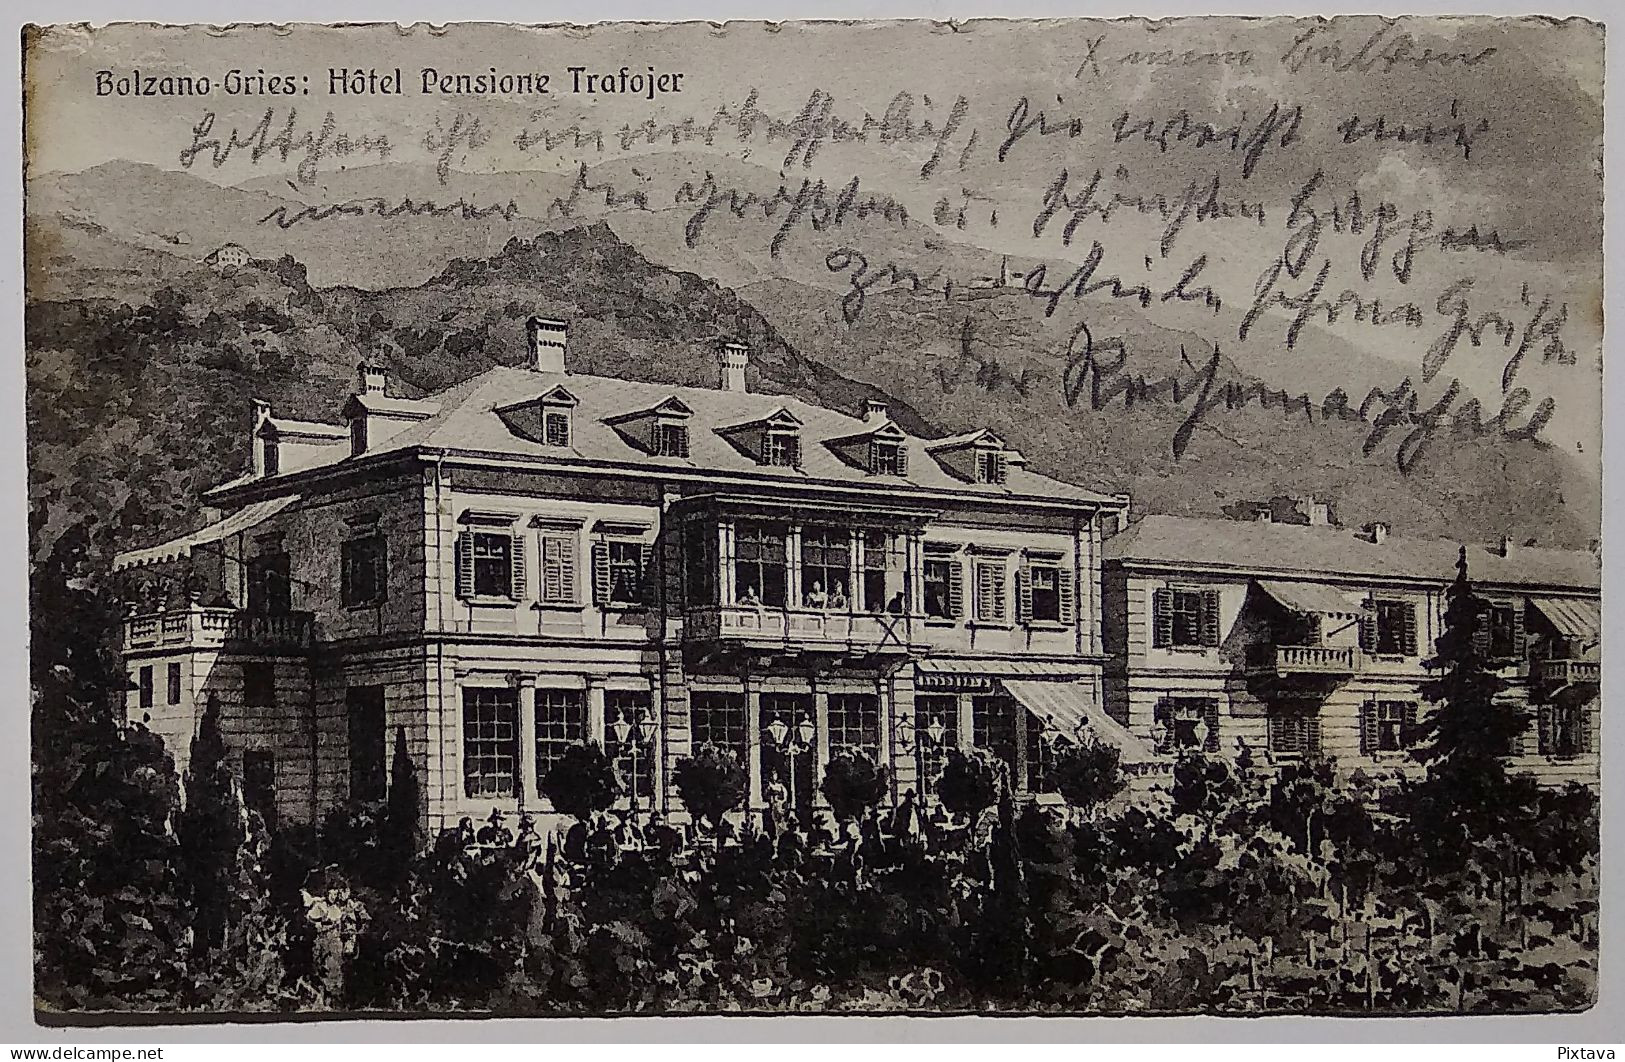 Italy / Bolzano / Bolzano-Gries / Hotel Pensione Trafojer / 1929 - Merano